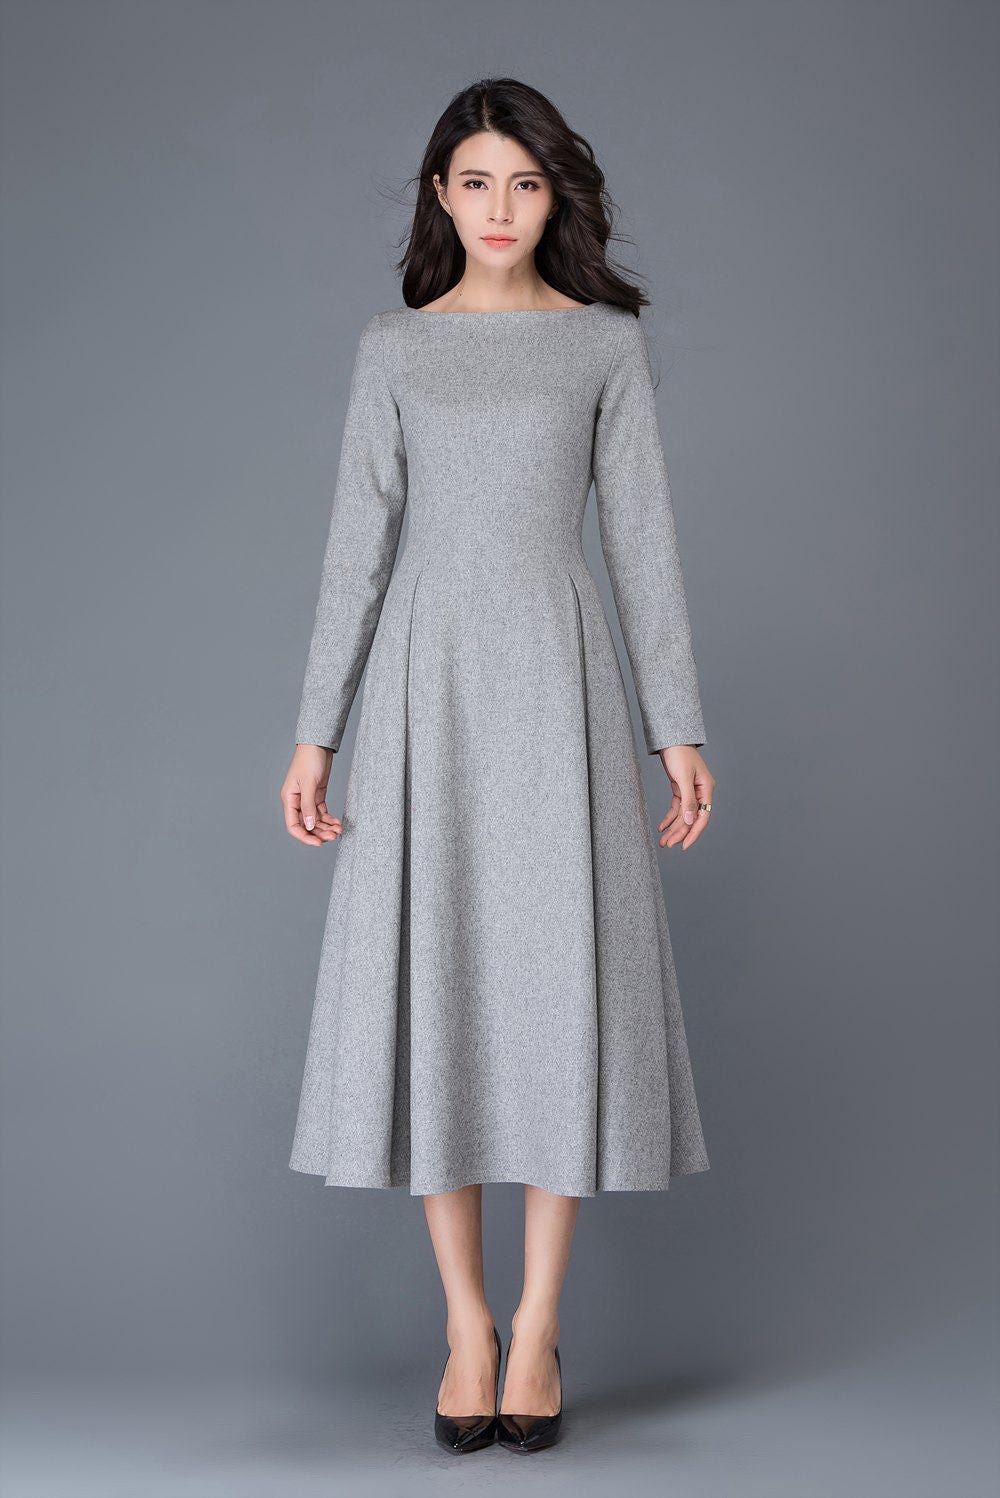 Wool dress winter dress gray wool dress boat neck wool | Etsy